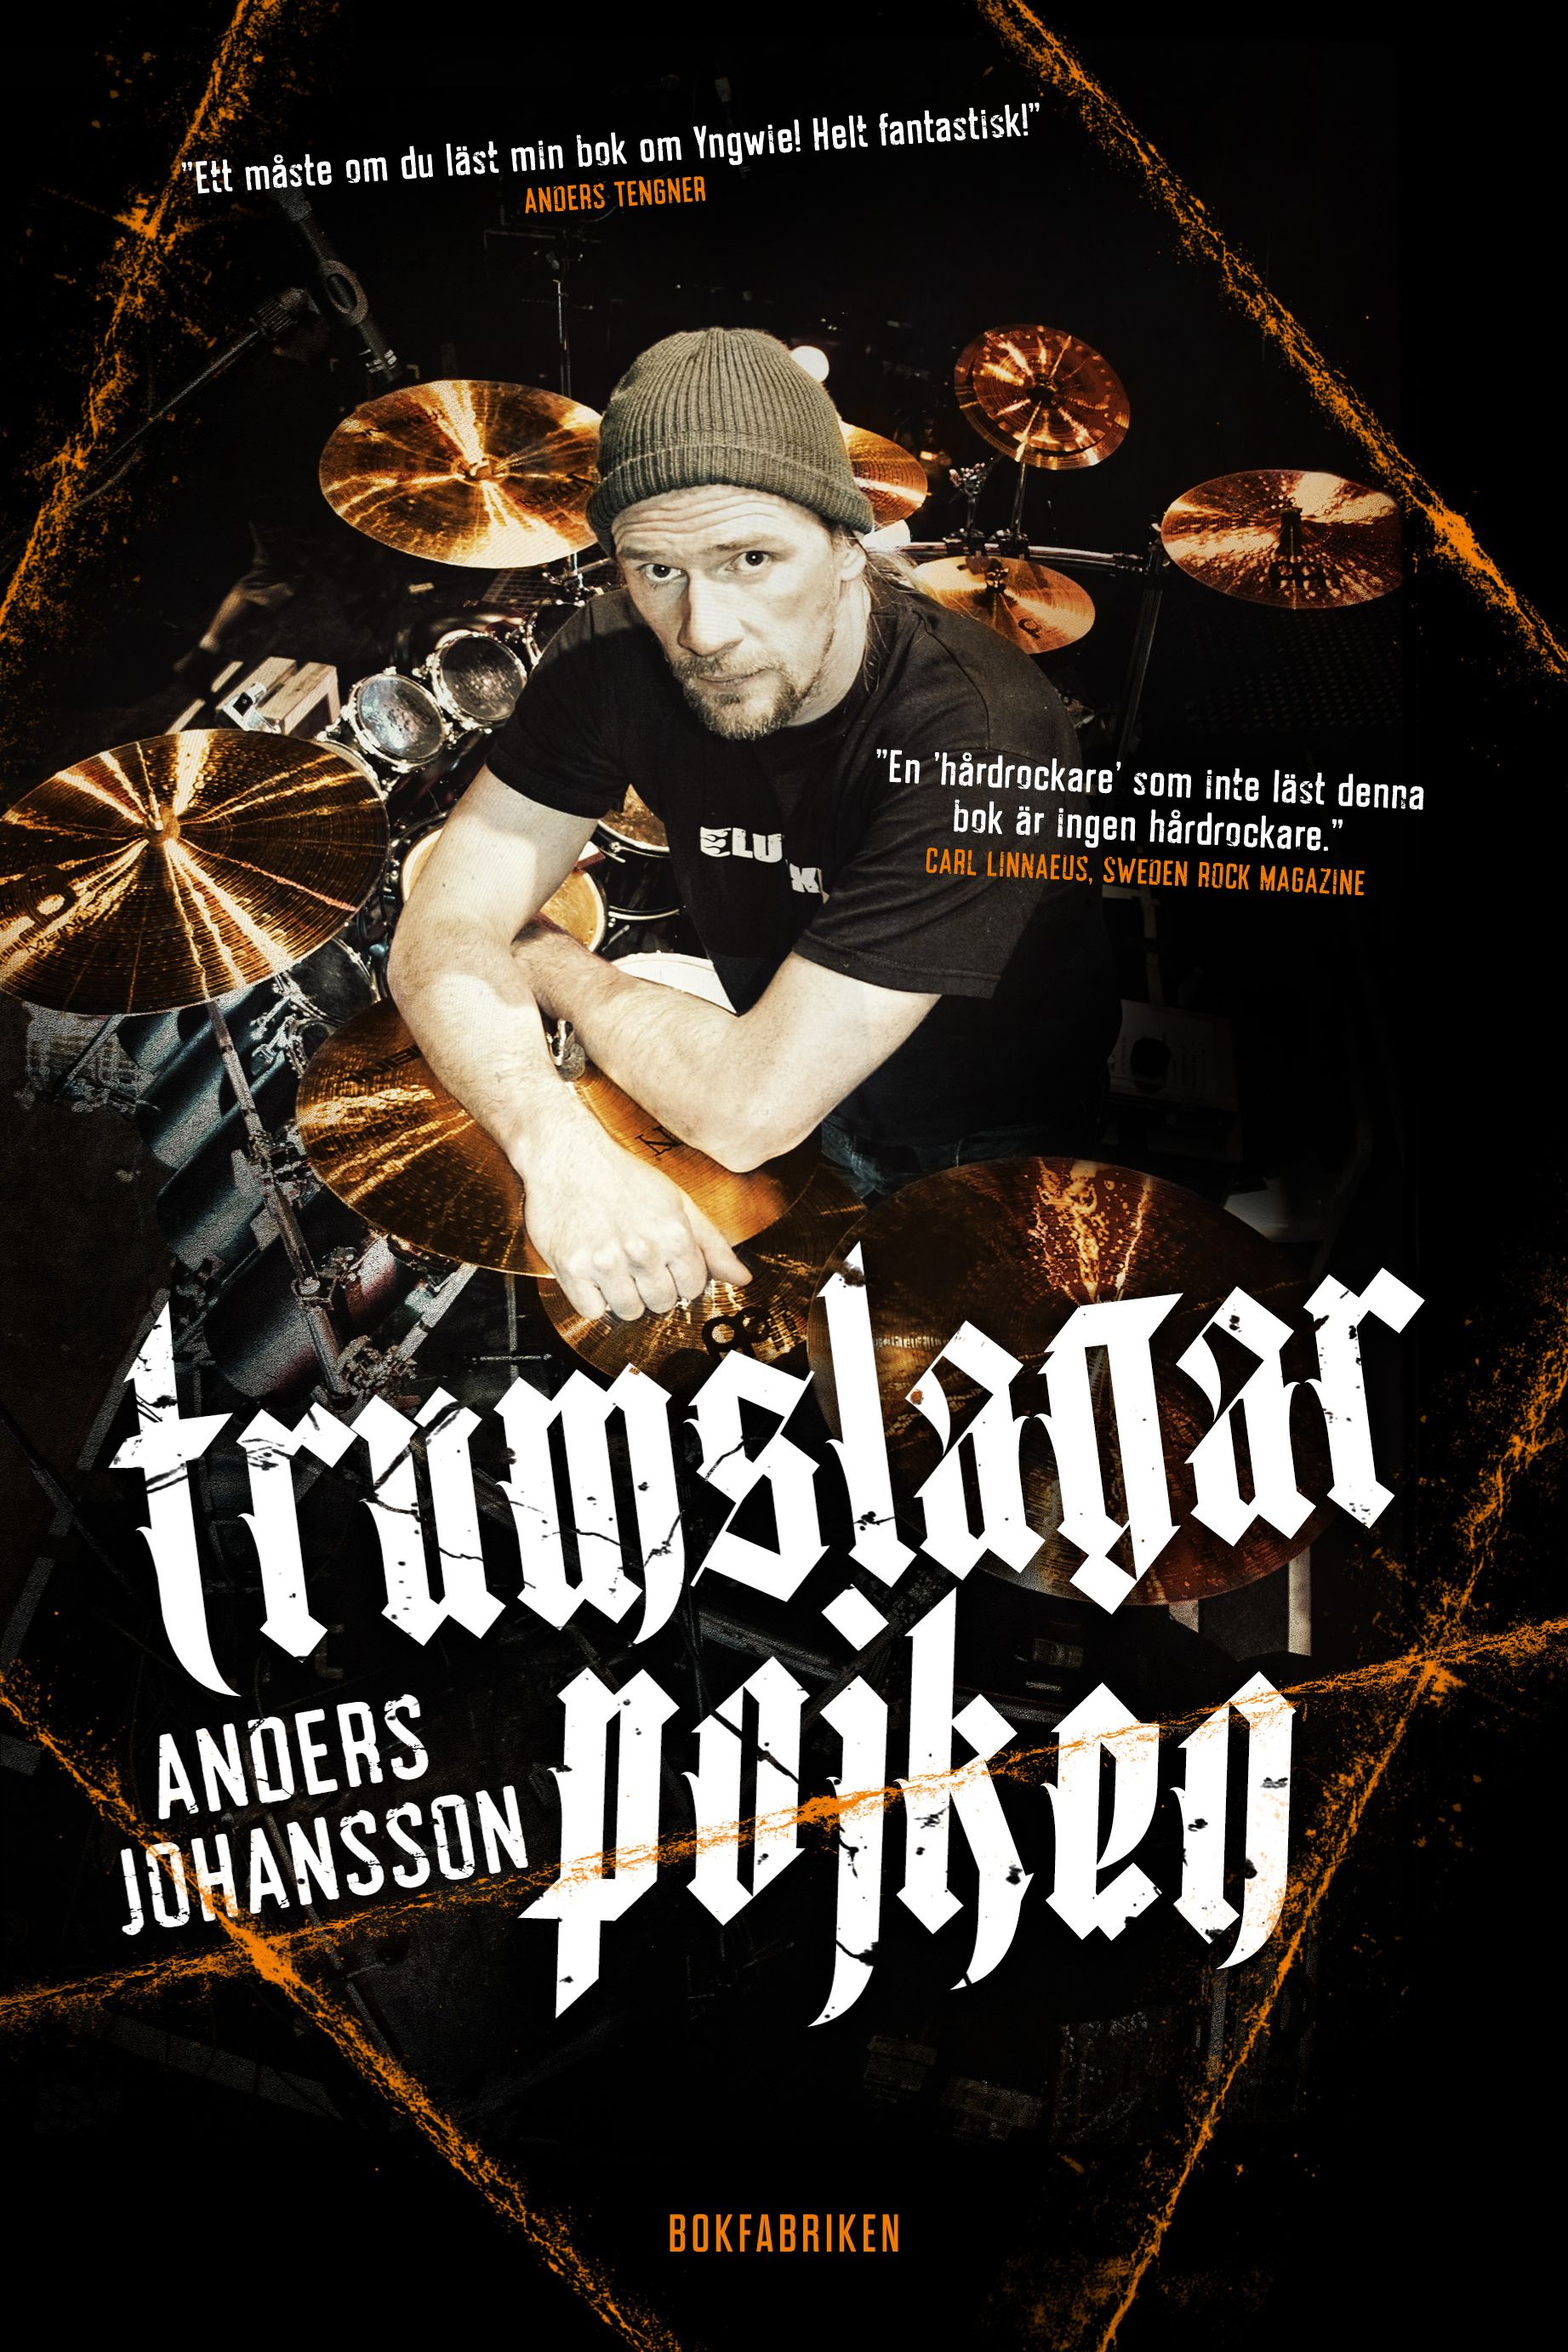 Trumslagarpojken, ljudbok av Anders Johansson